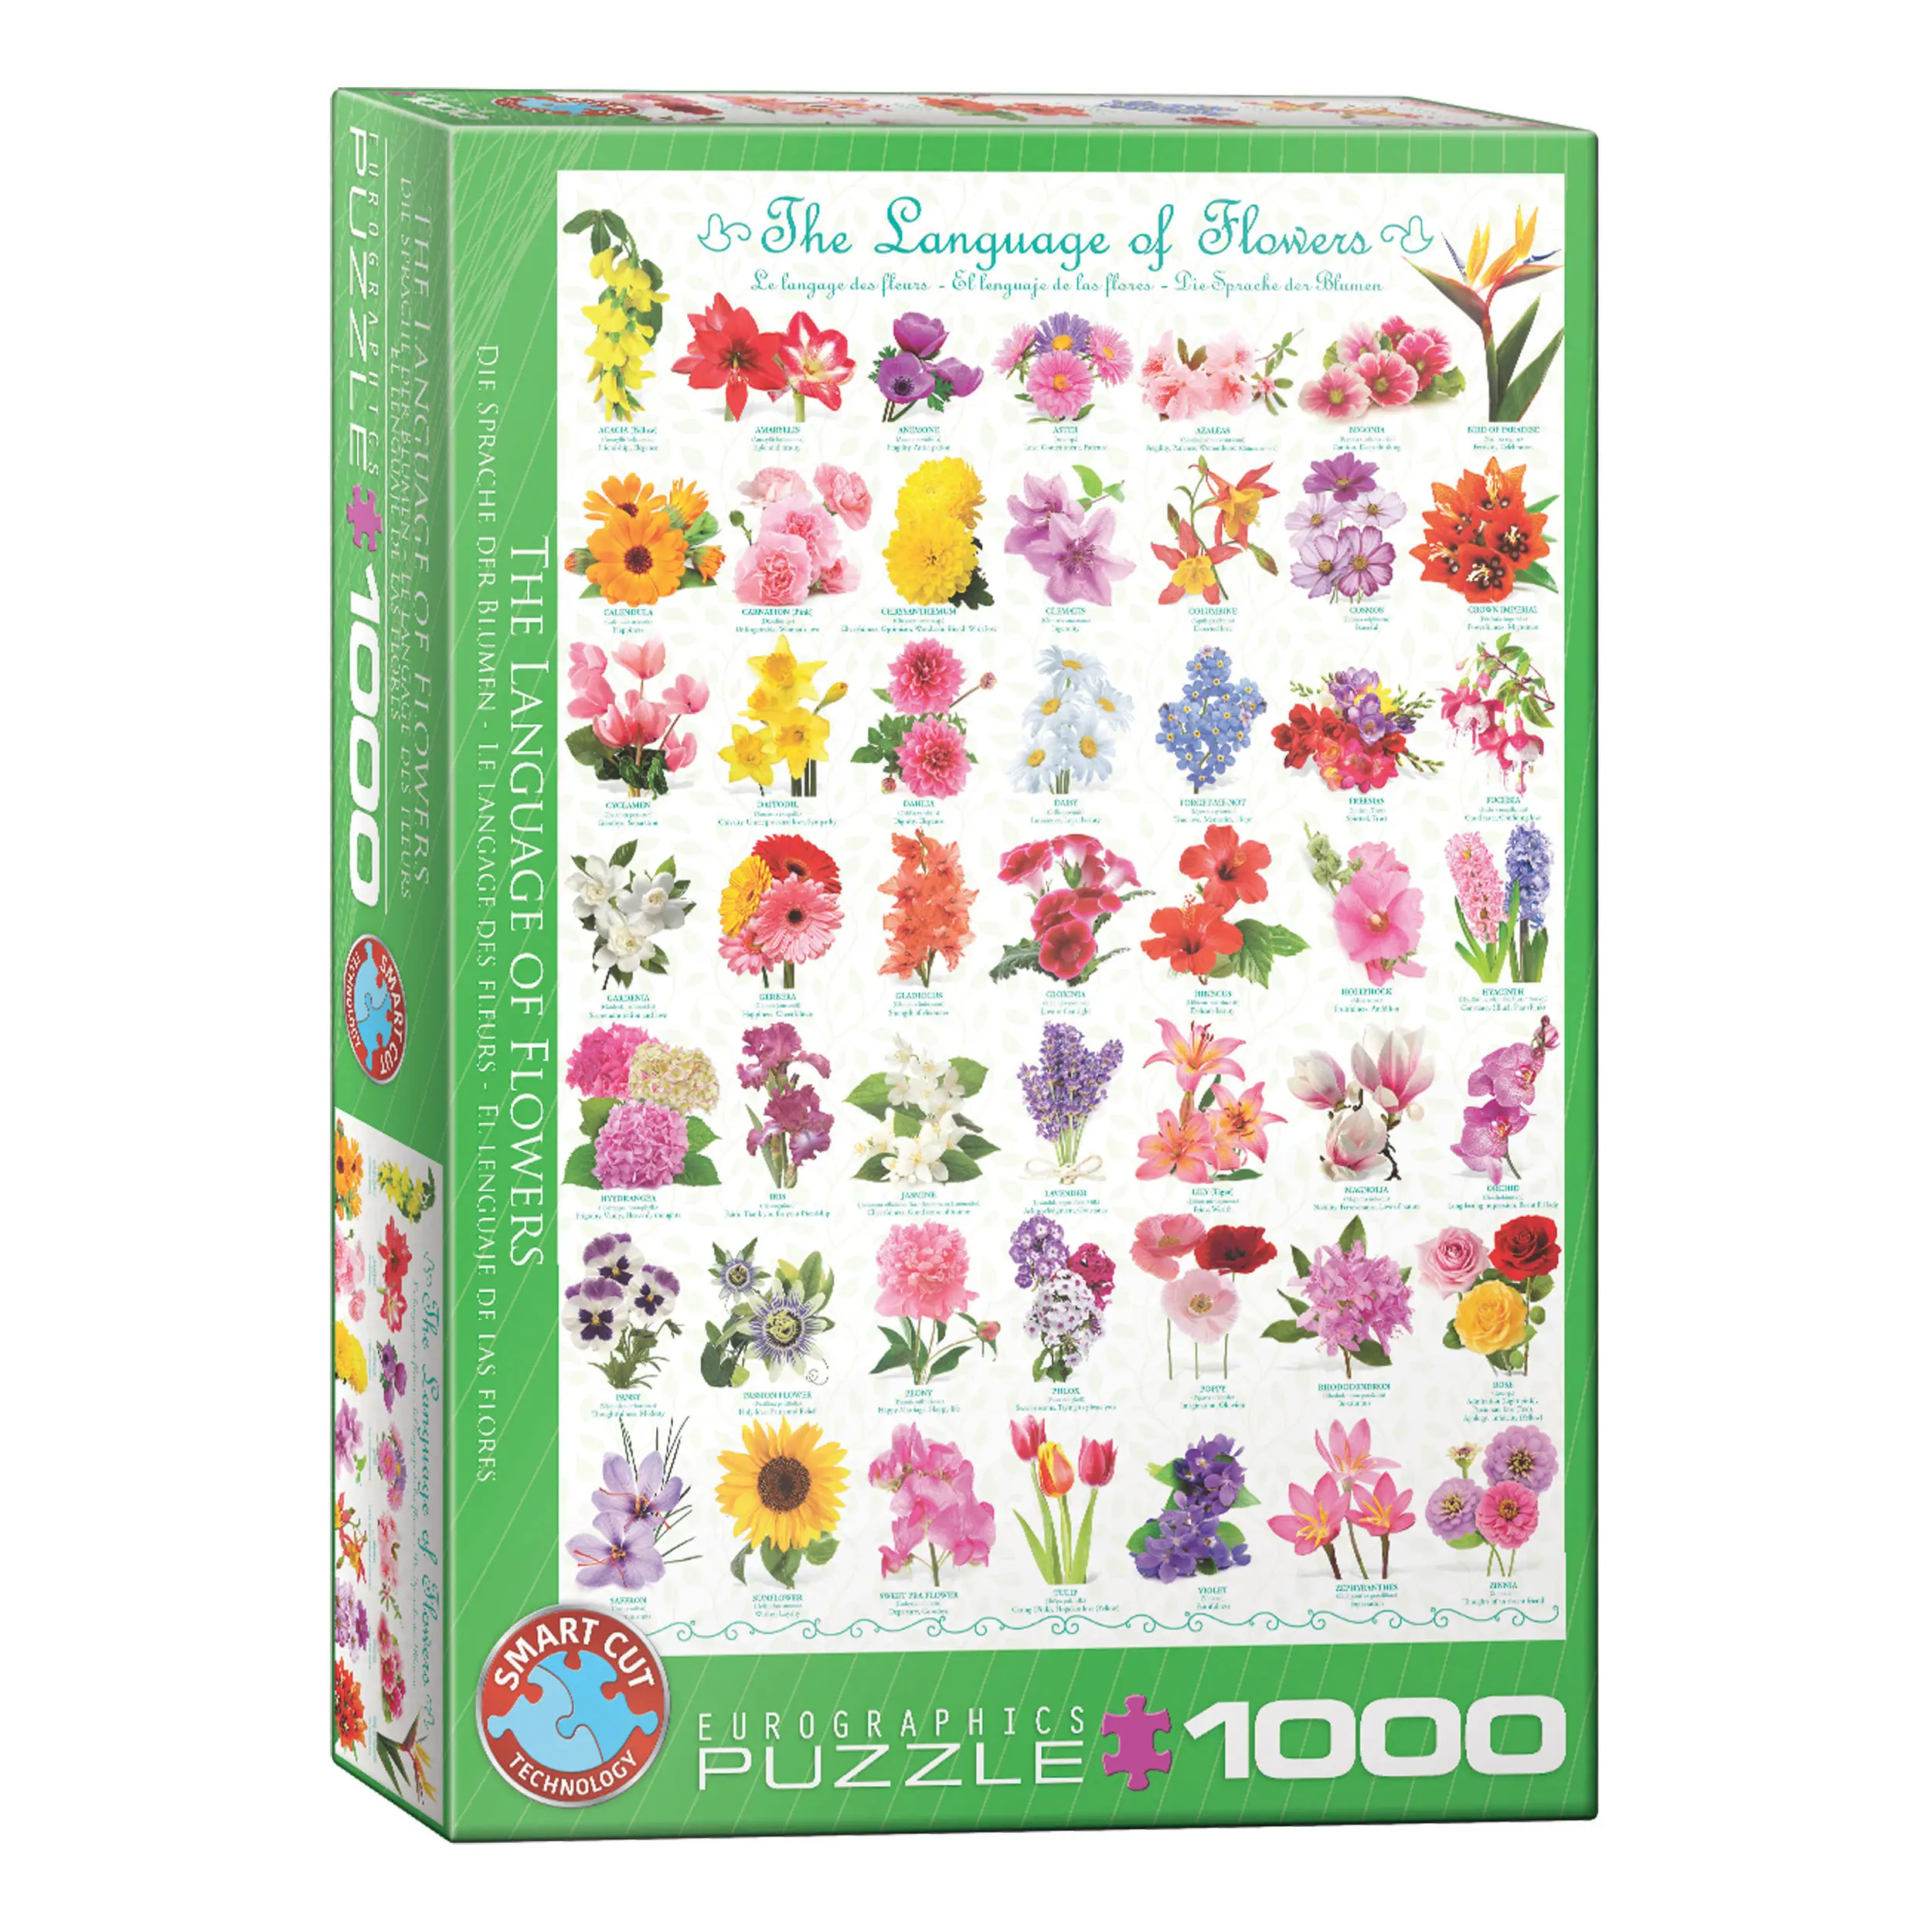 Puzzle Die Sprache der Blumen